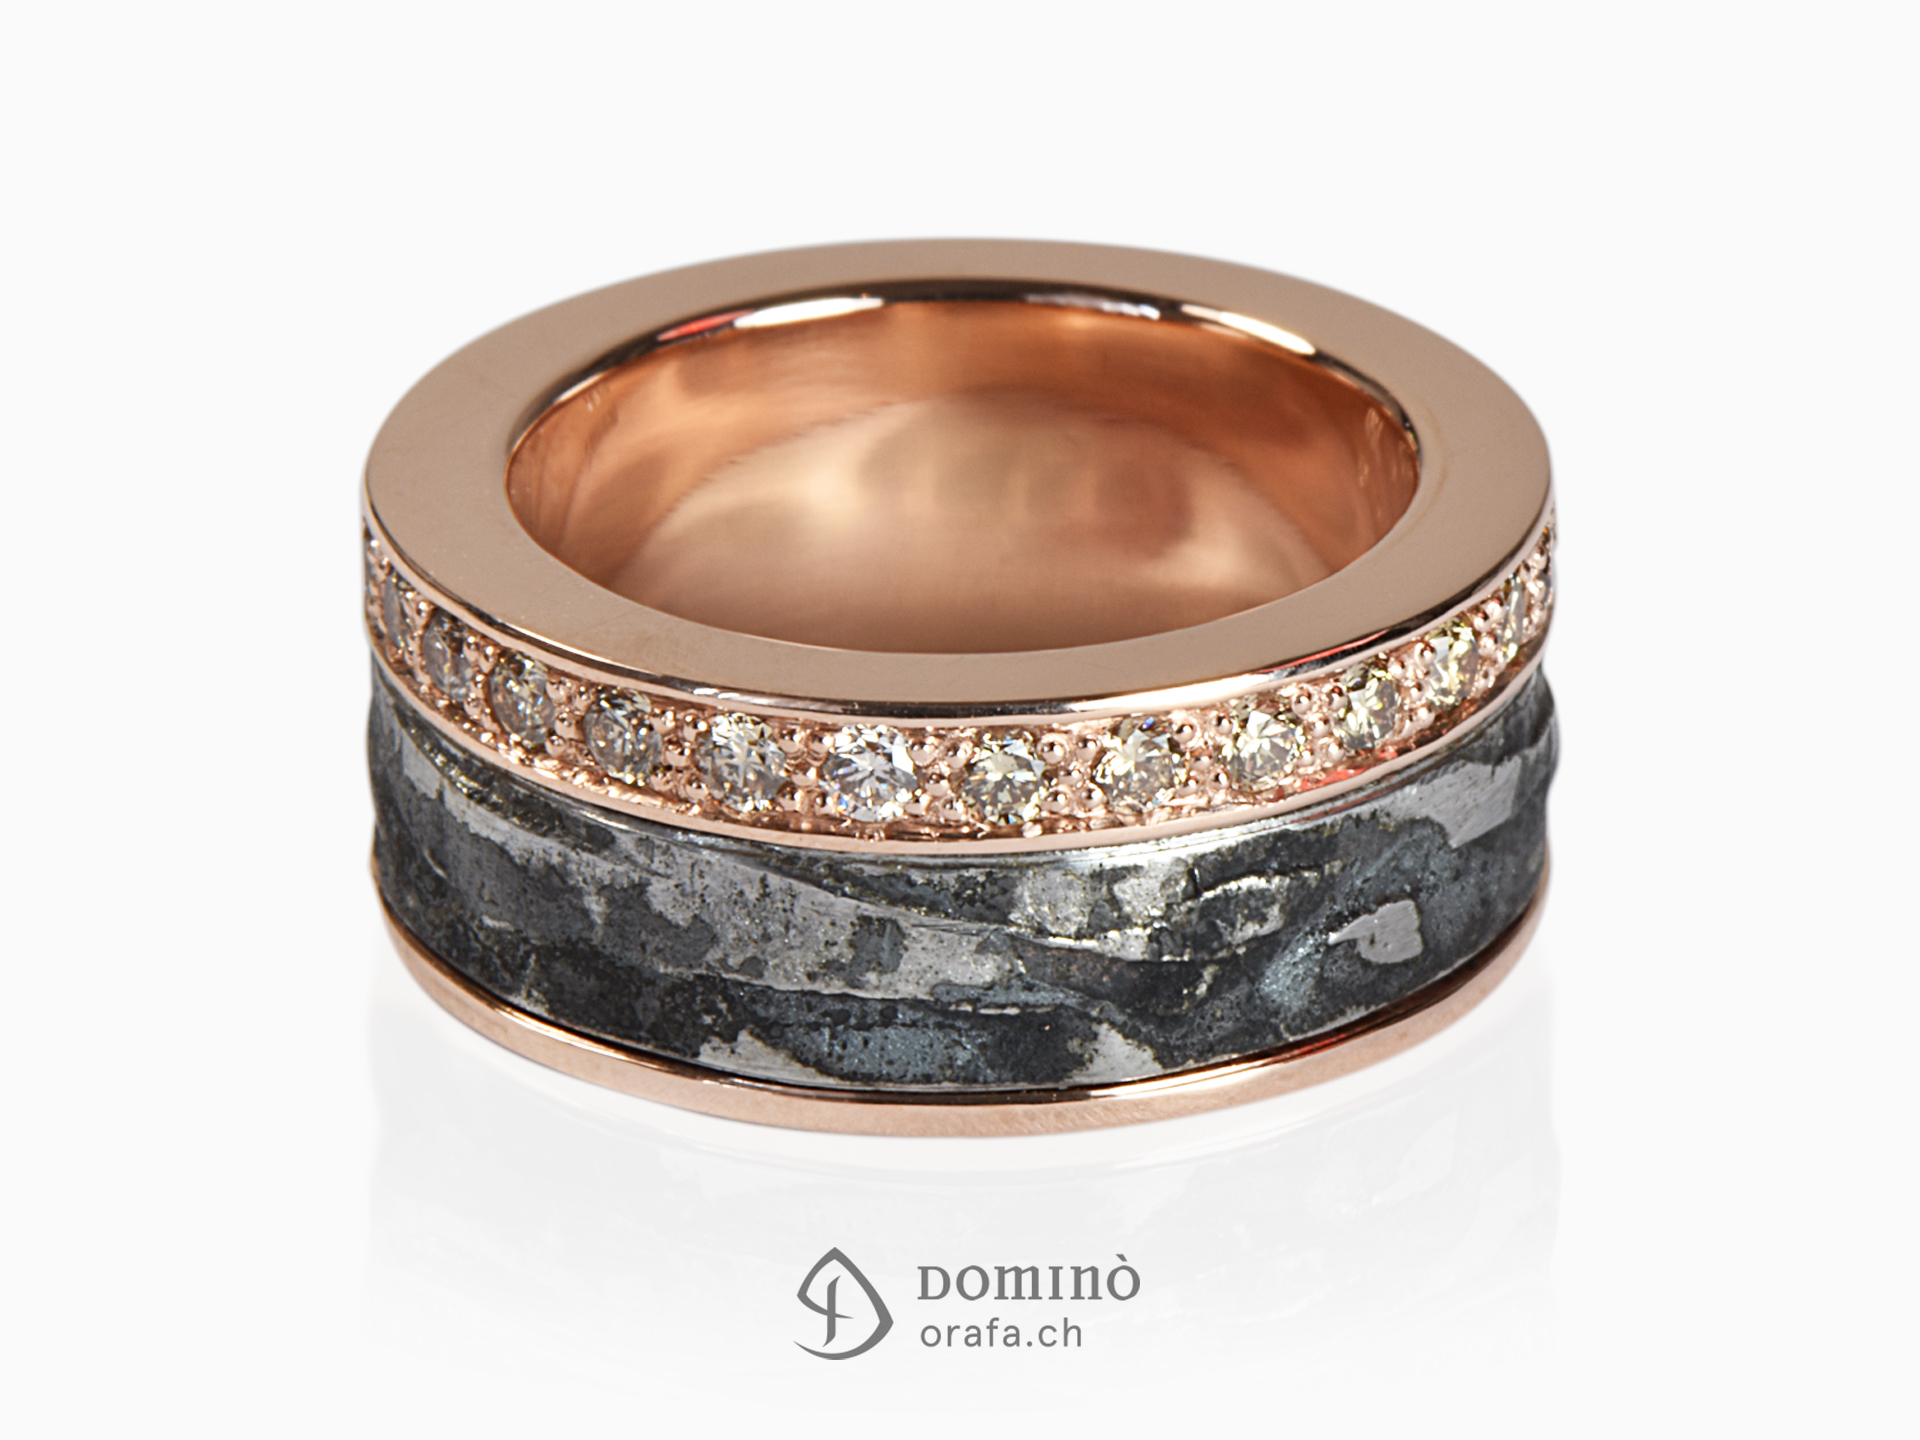 Ferro Prezioso ring and brown diamond